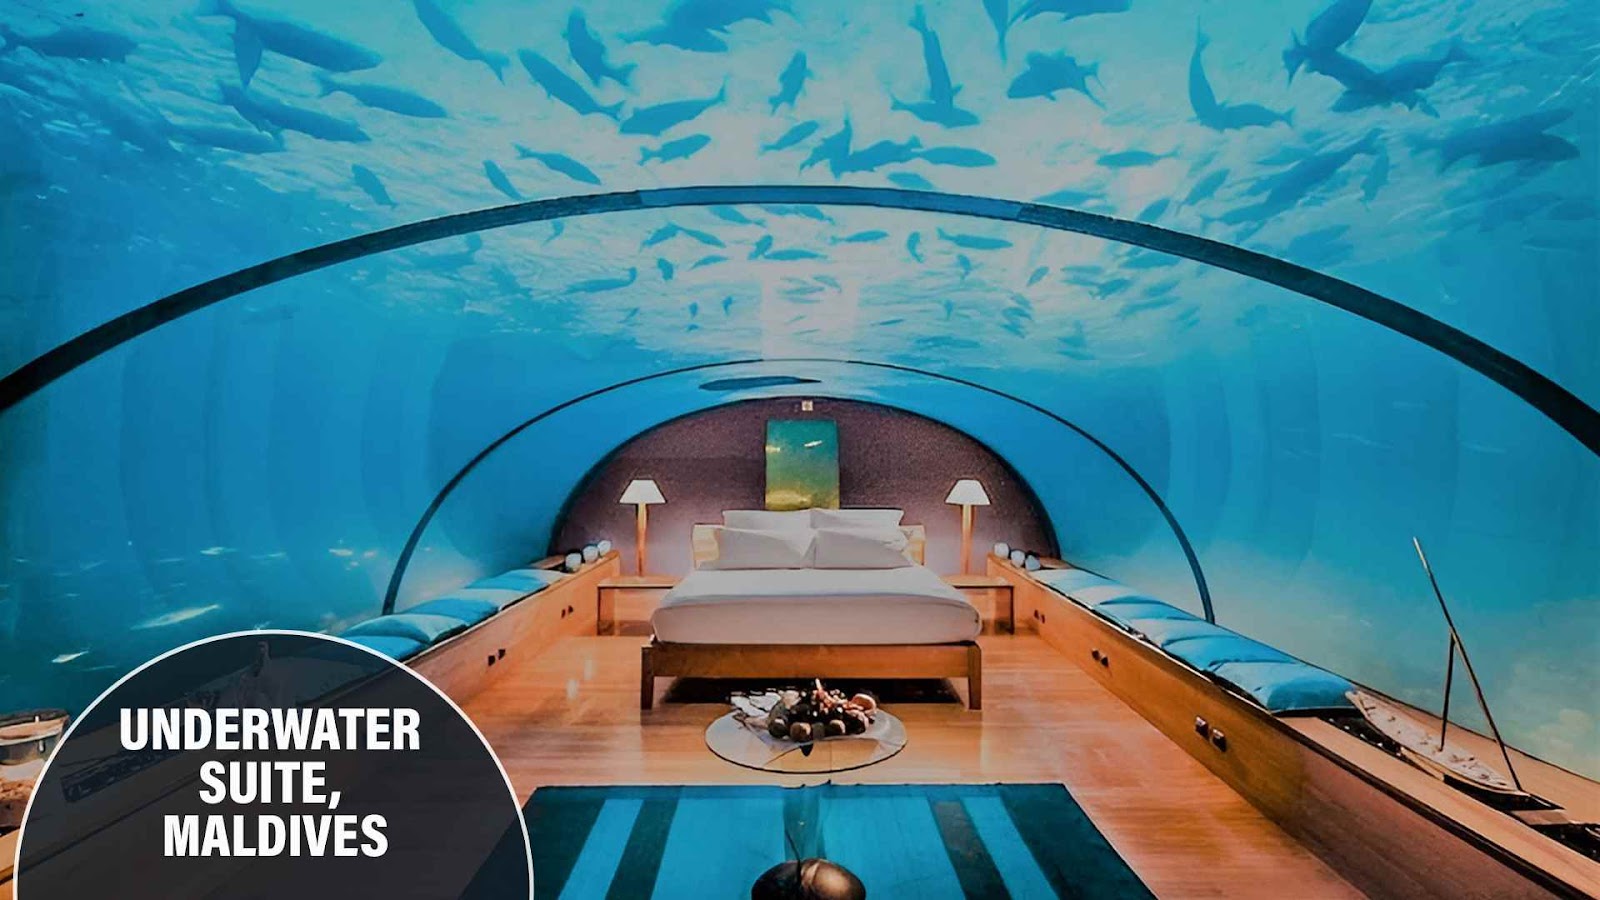 Underwater Suite, Maldives: